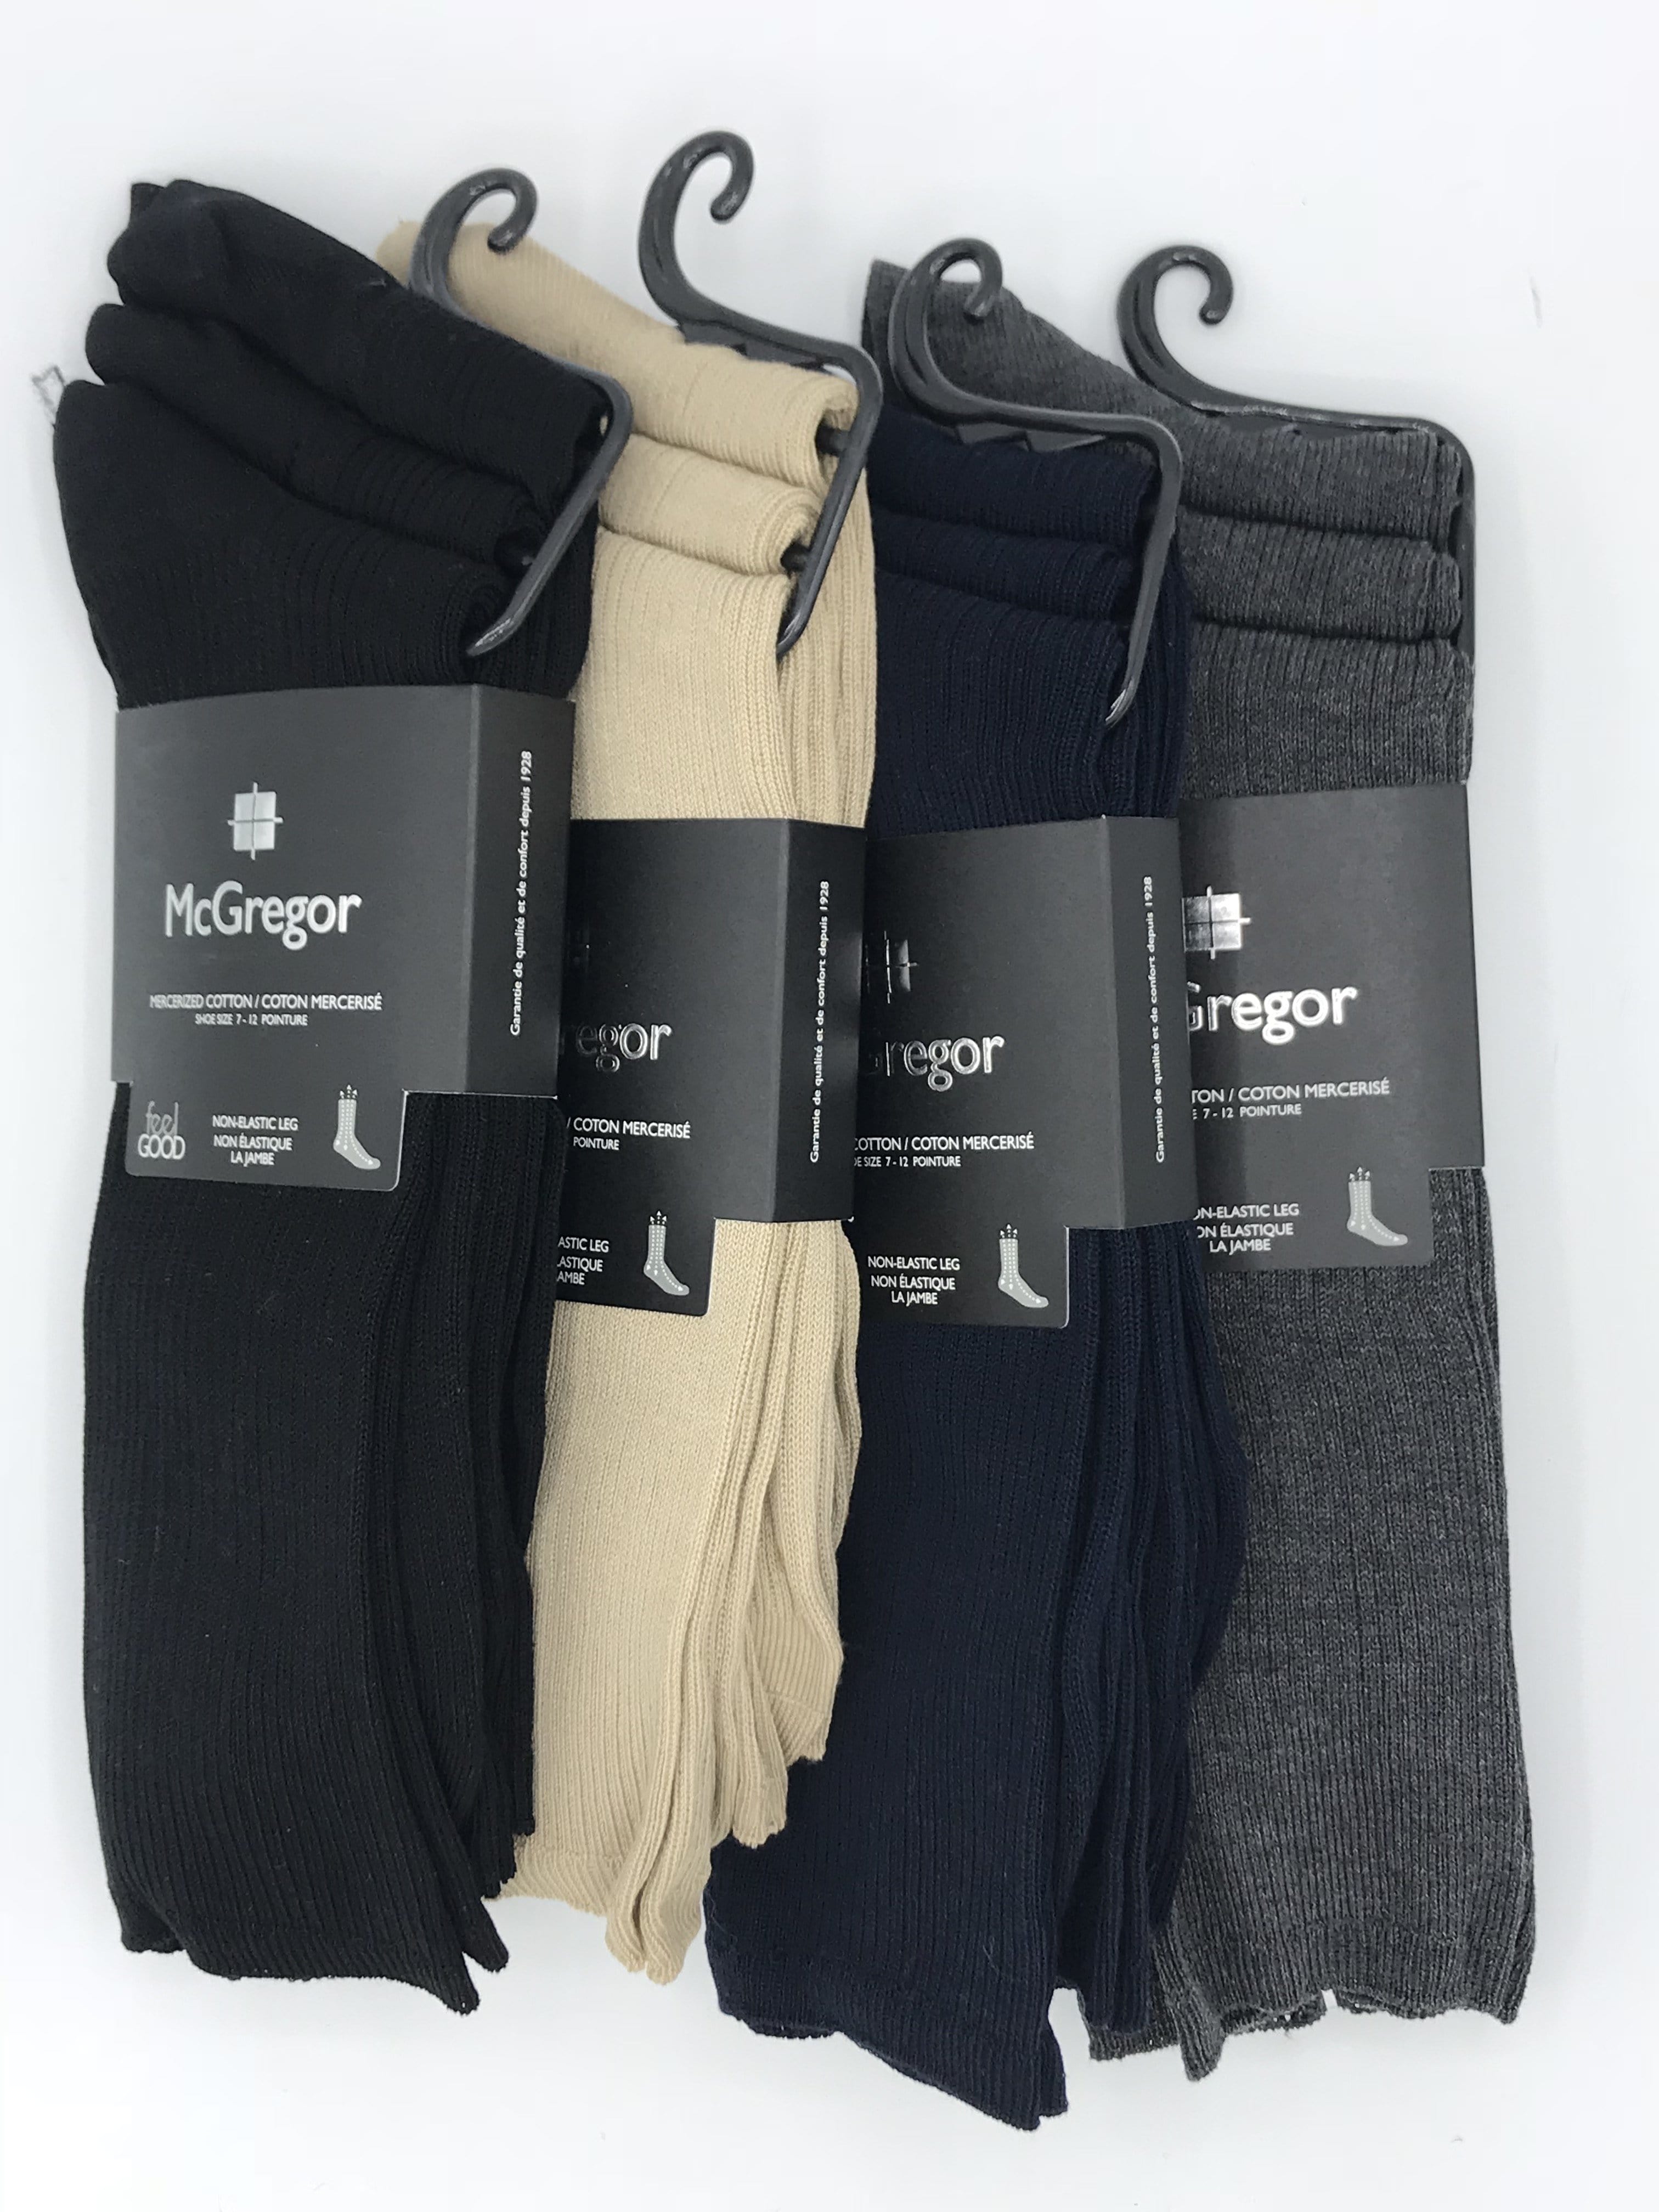 McGregor Non-Elastic 3-Pack Mercerized Cotton Socks - MML122